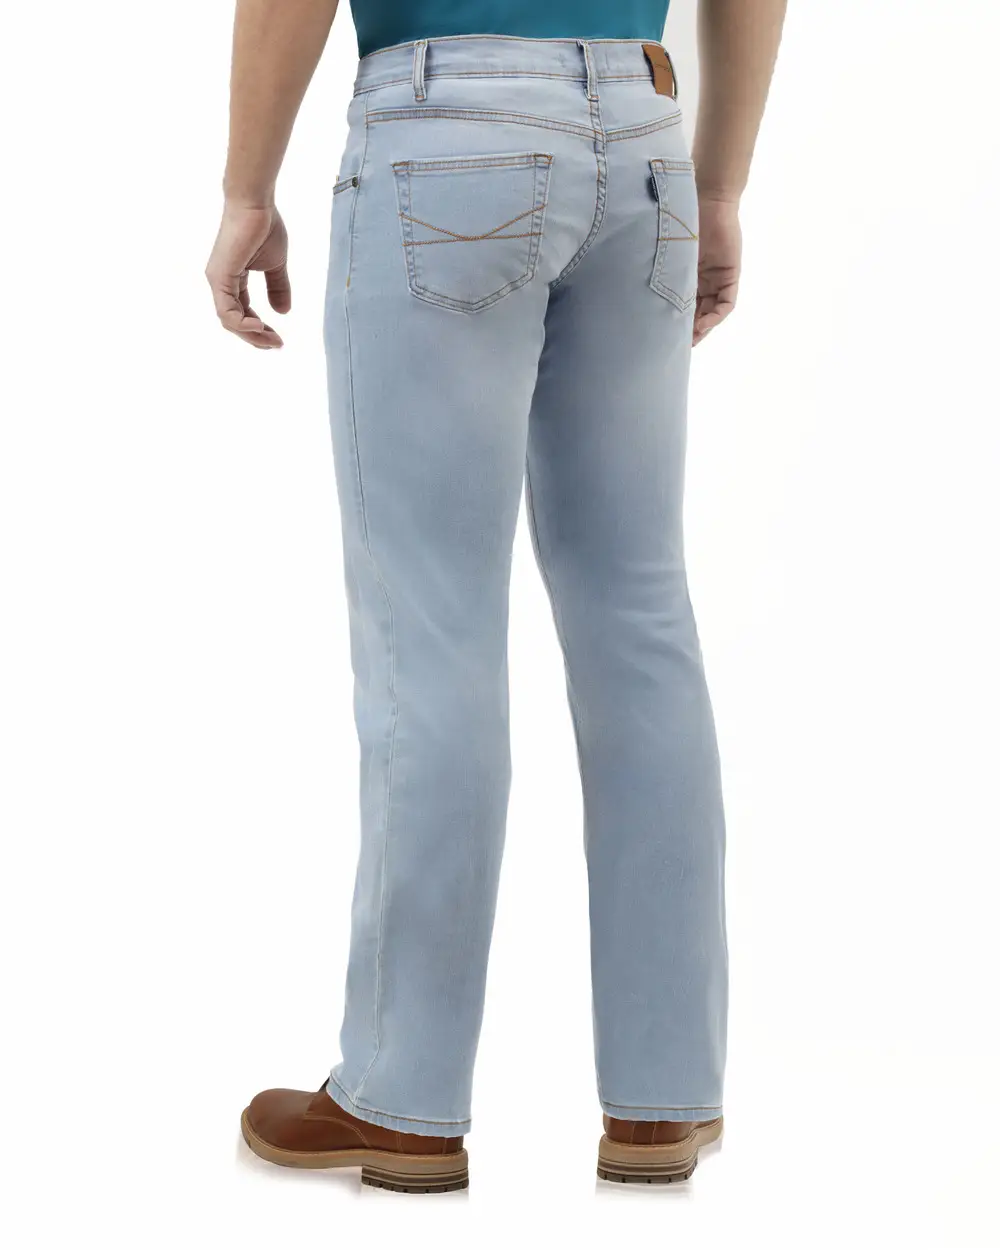 Jeans 721 skinny celeste